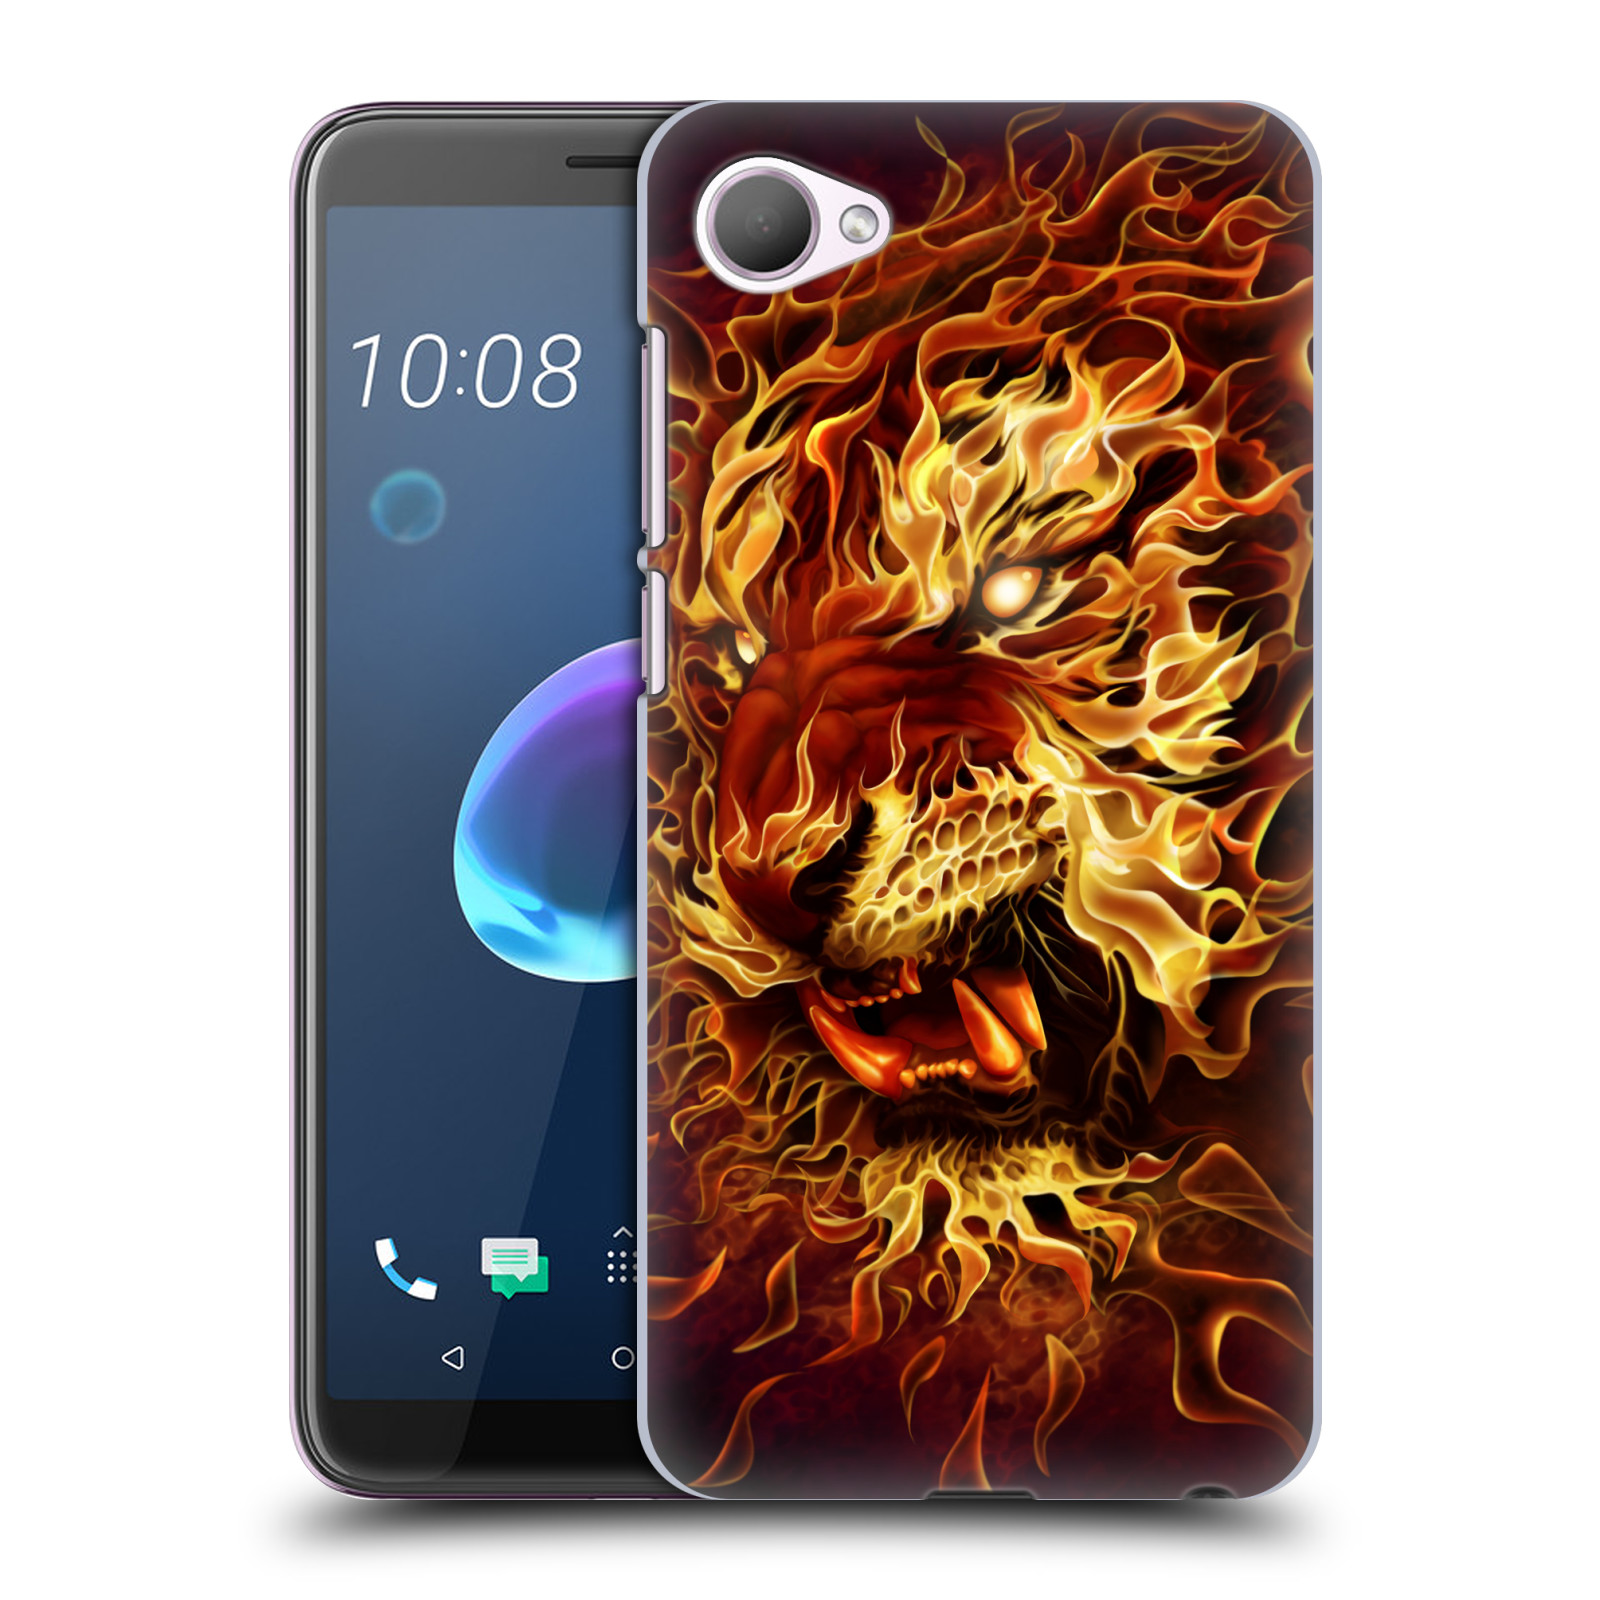 Pouzdro na mobil HTC Desire 12 / Desire 12 DUAL SIM - HEAD CASE - Fantasy kresby Tom Wood - Ohnivý tygr